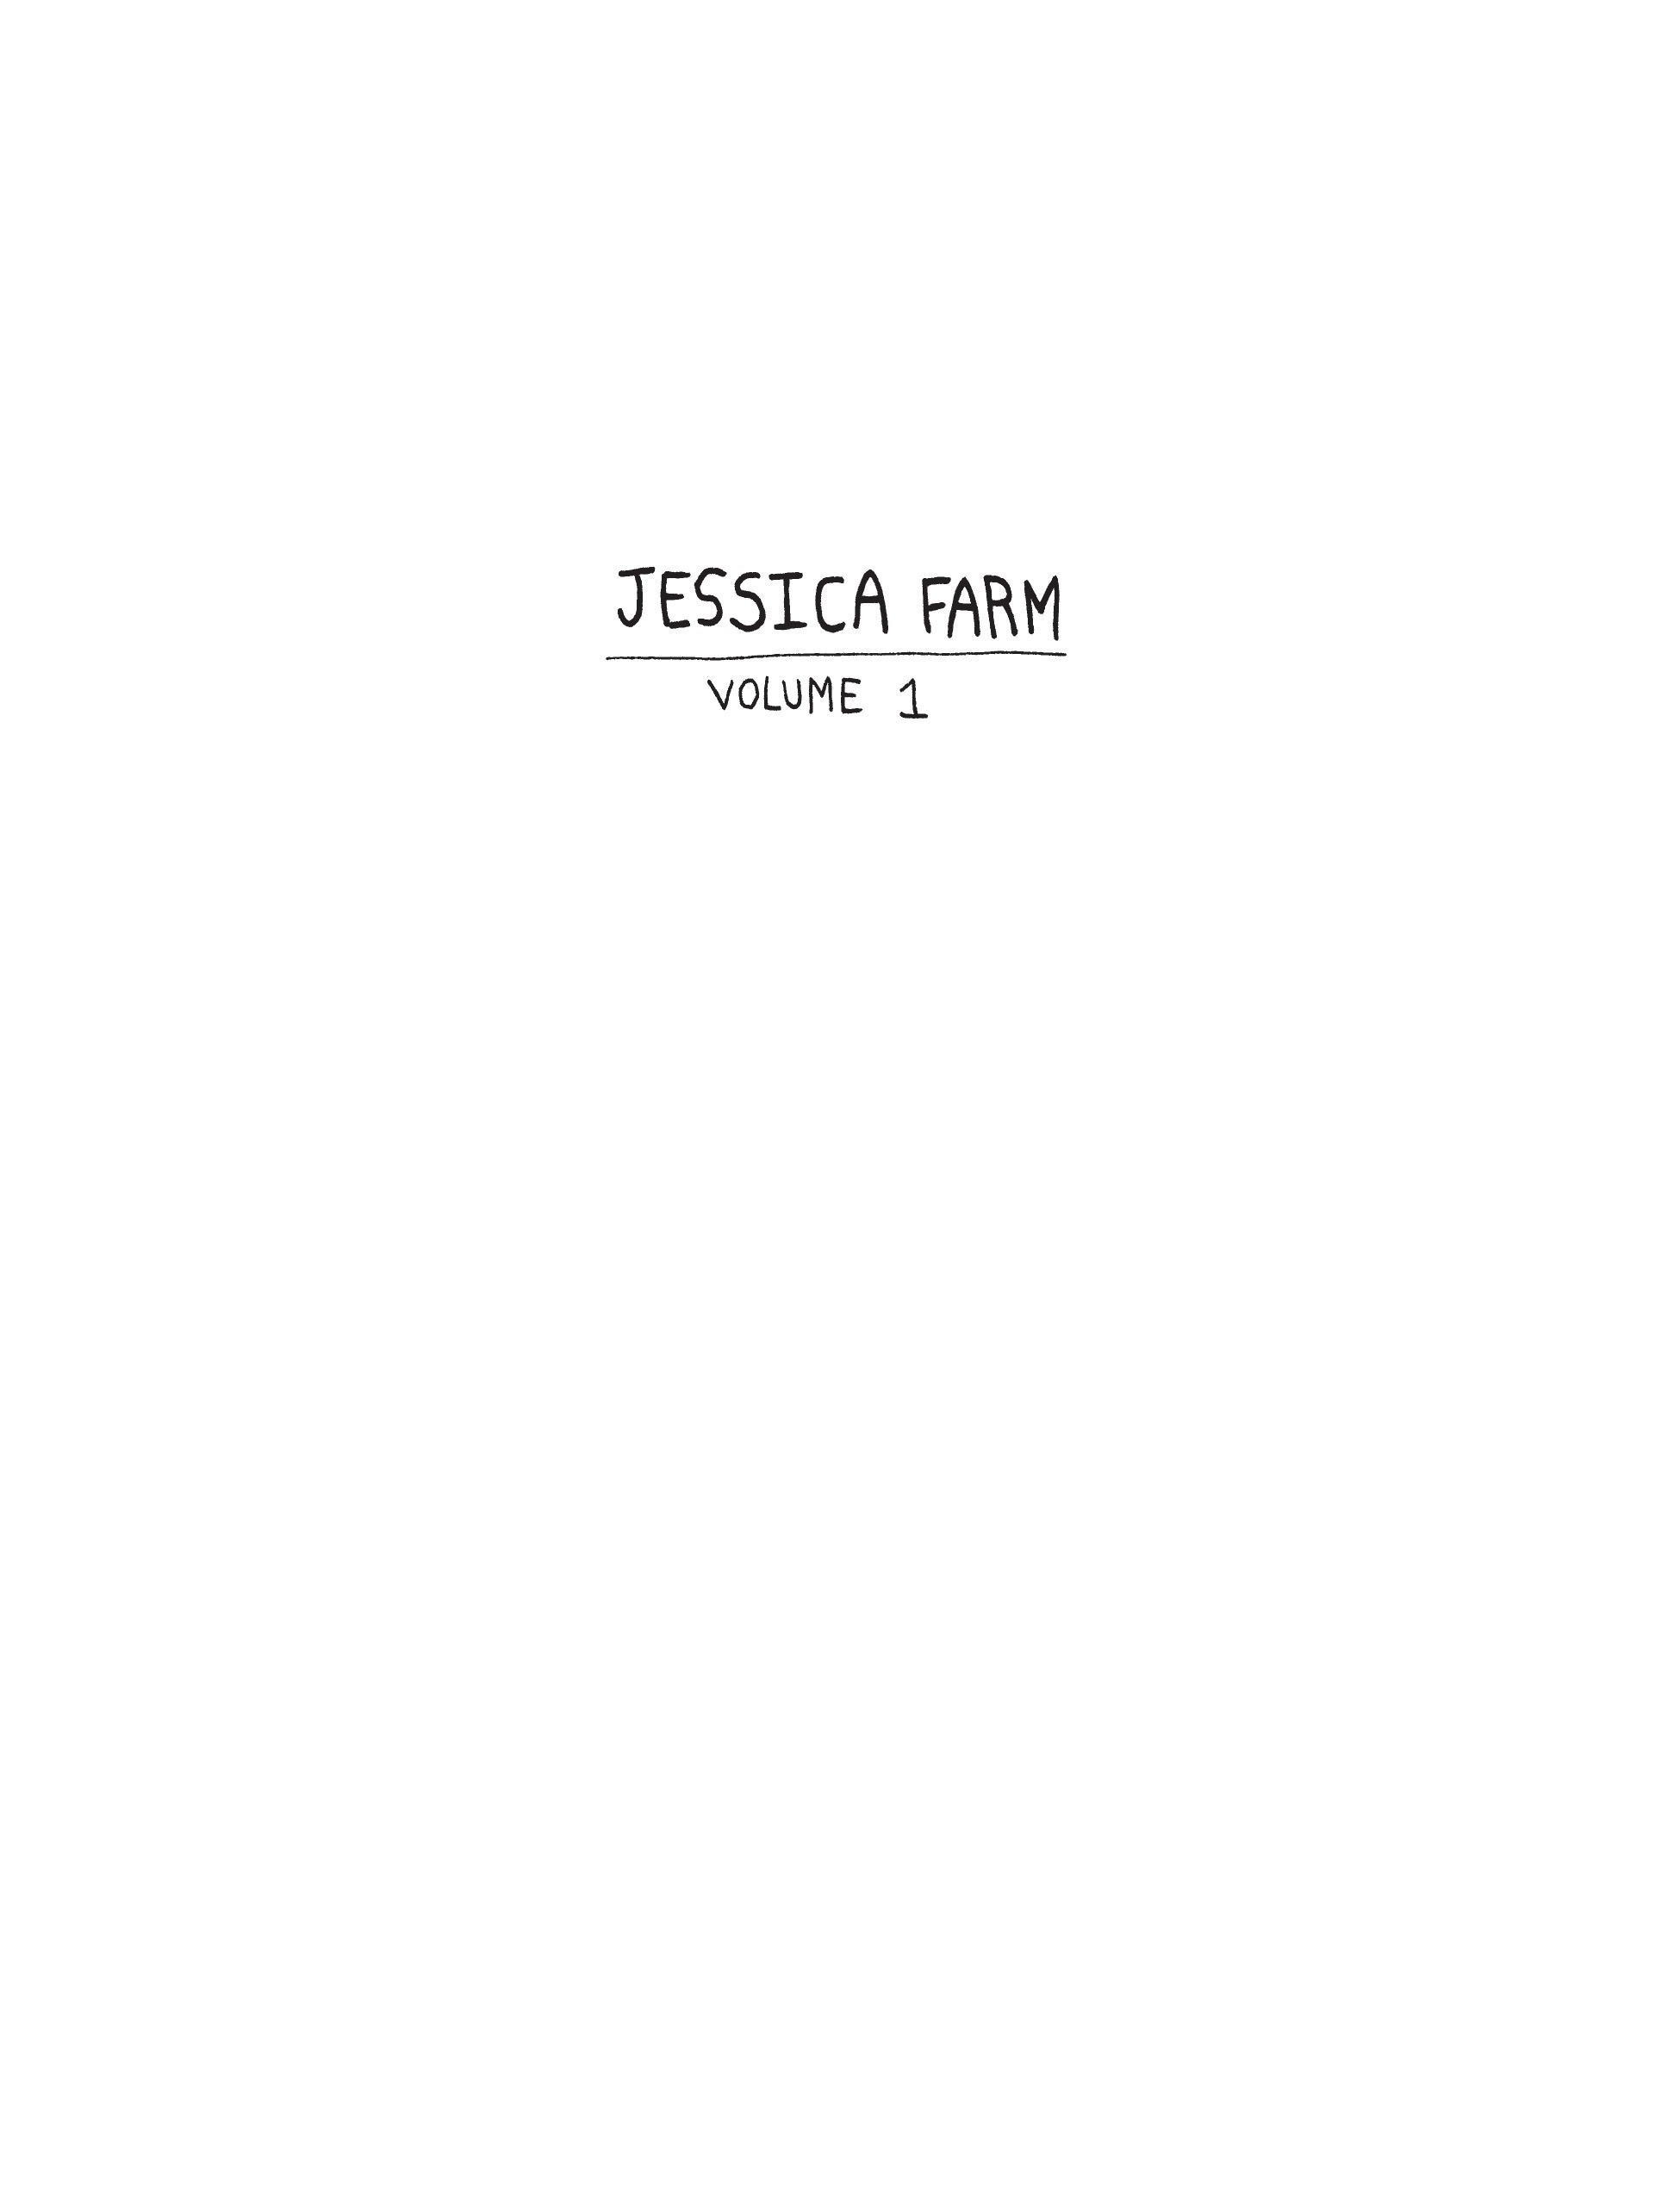 Read online Jessica Farm comic -  Issue # TPB 1 - 2